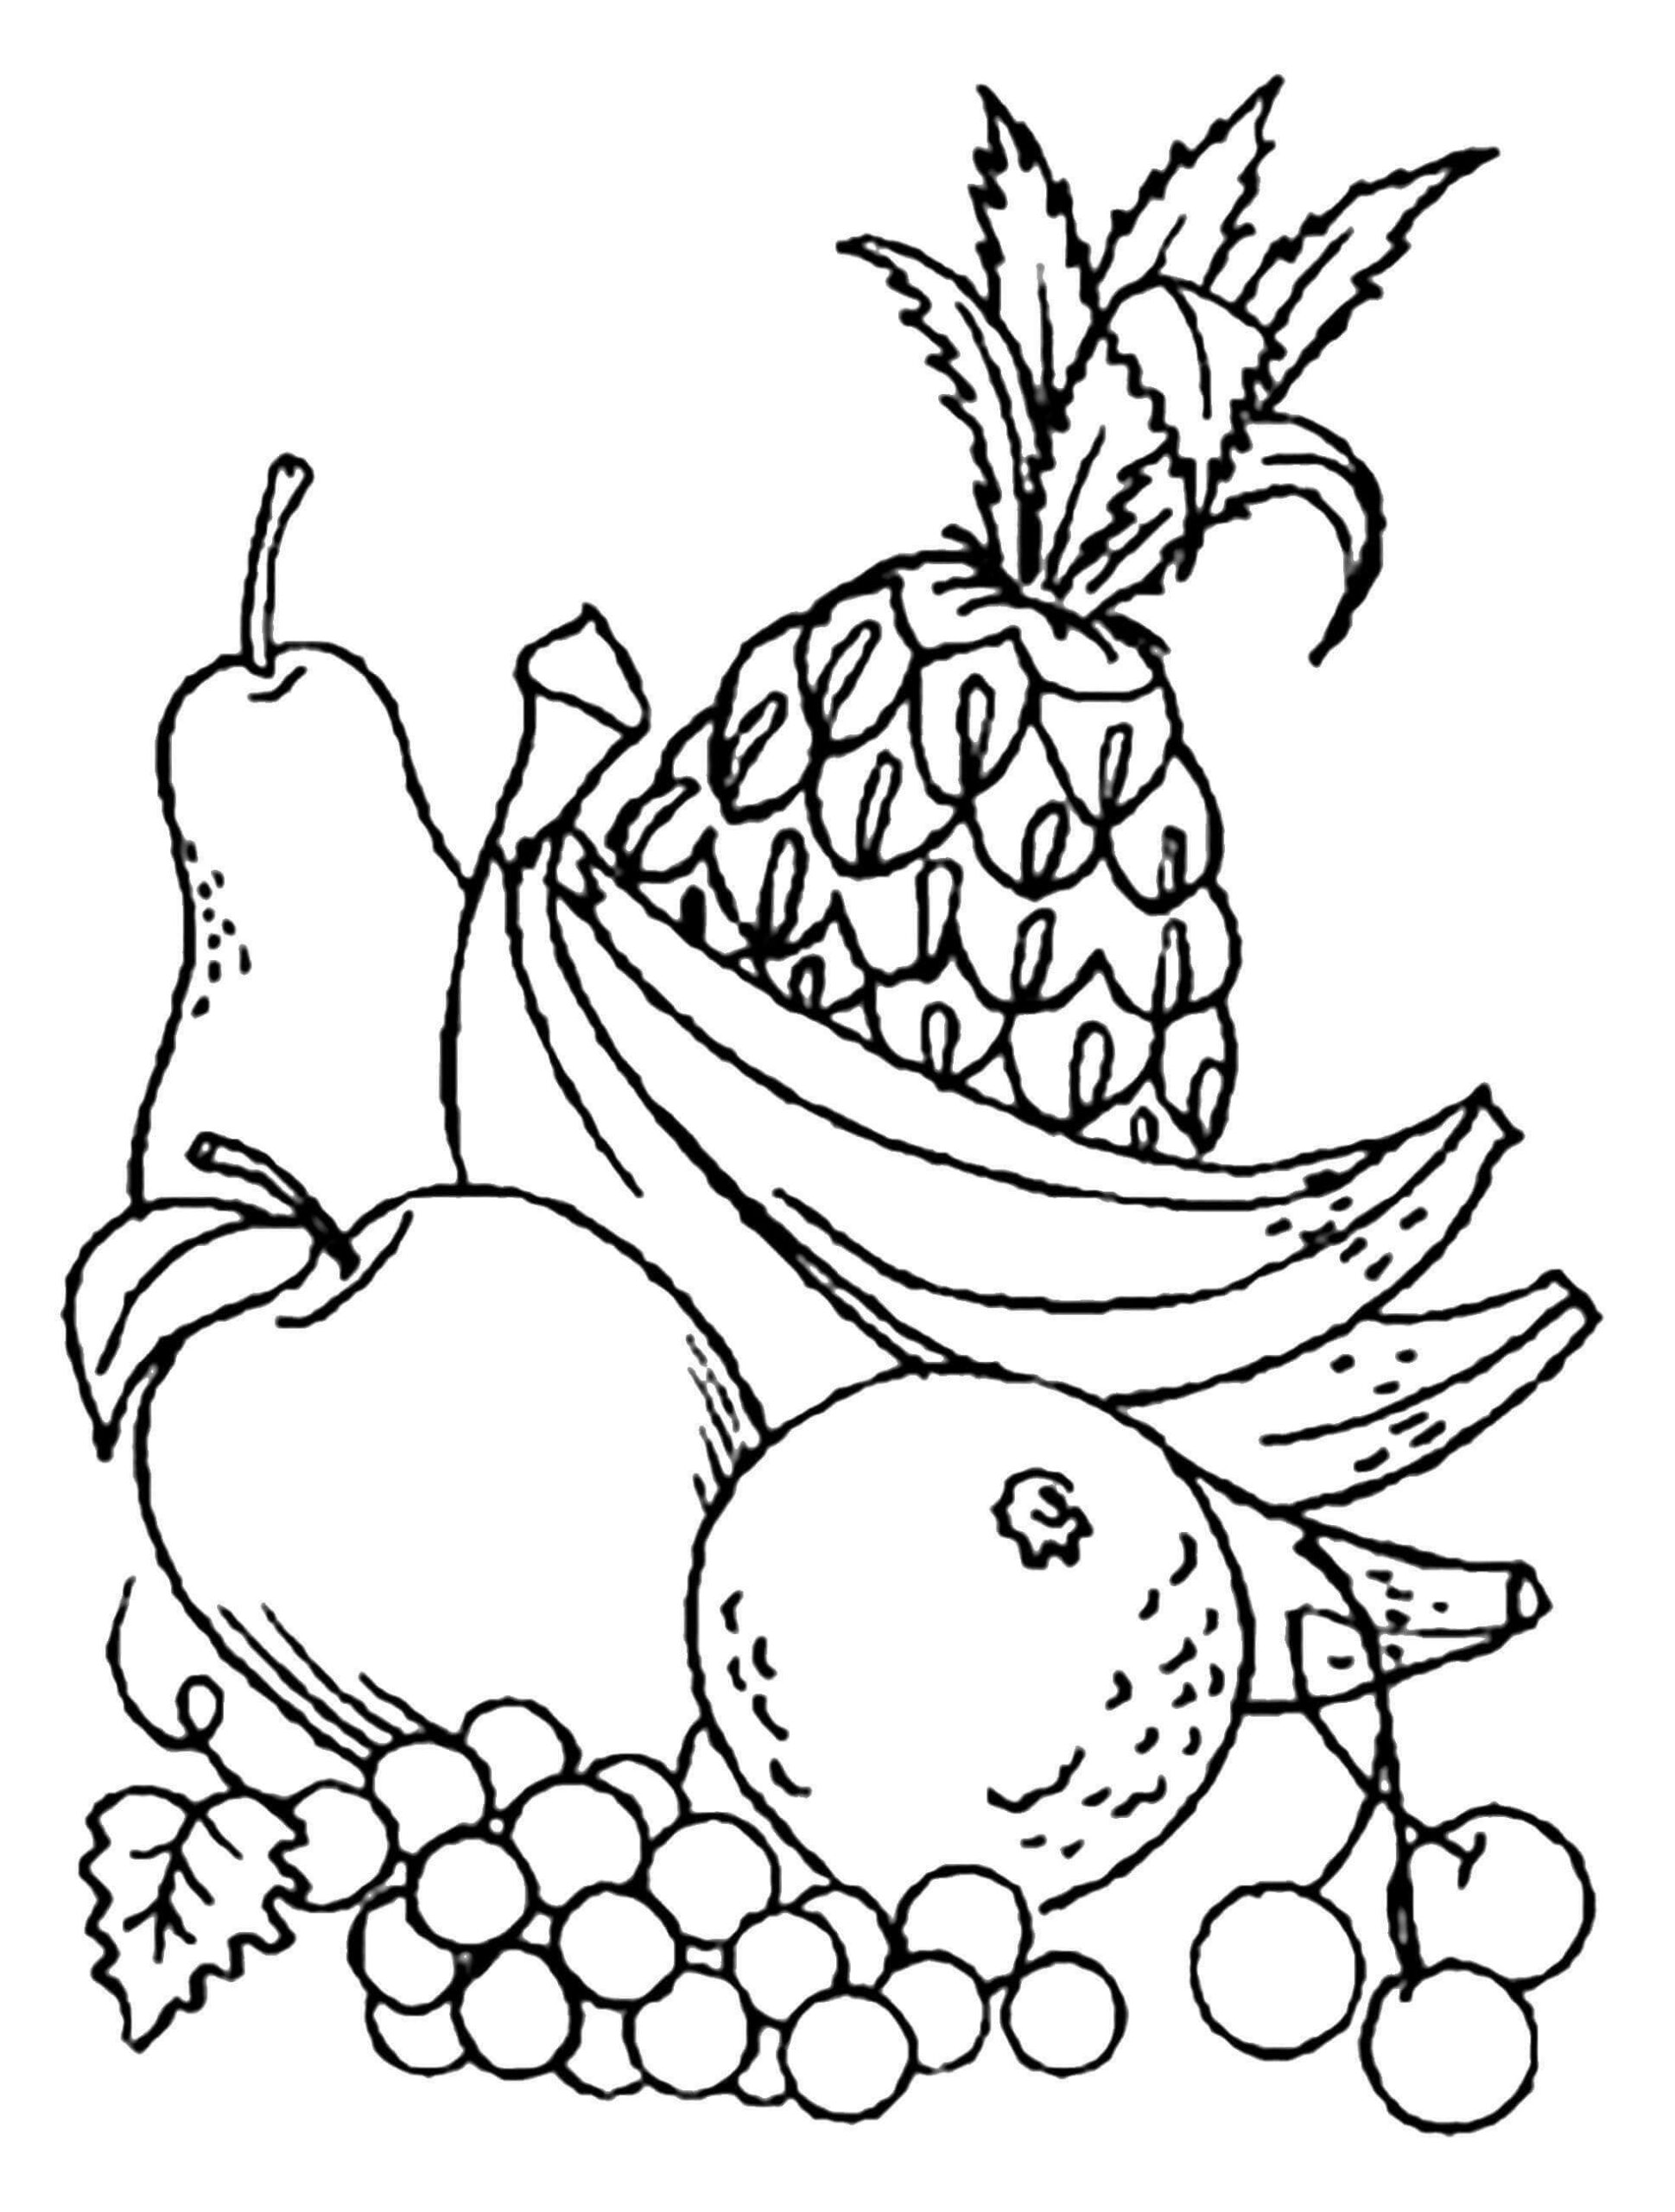 Dibujos de Frutas y Bayas Ricas En Vitaminas para colorear